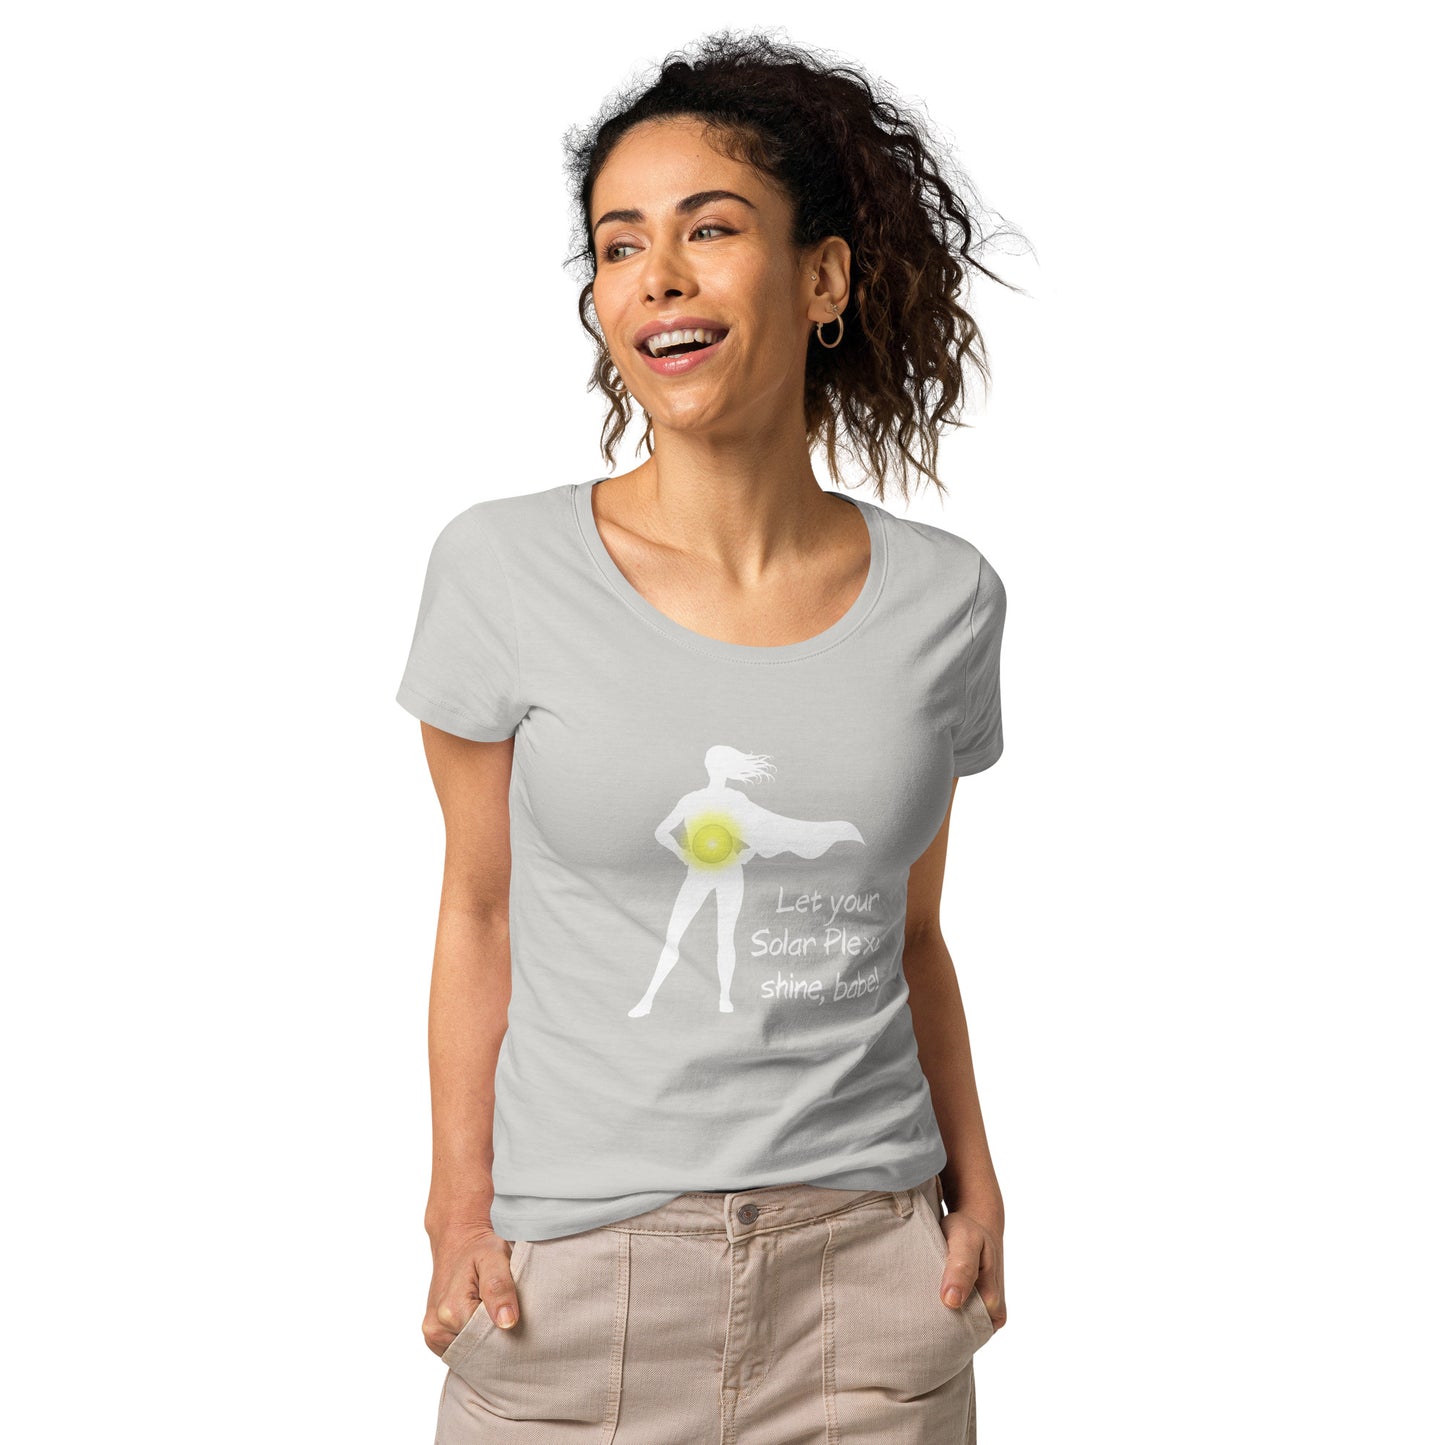 Solar plexus, t-shirt